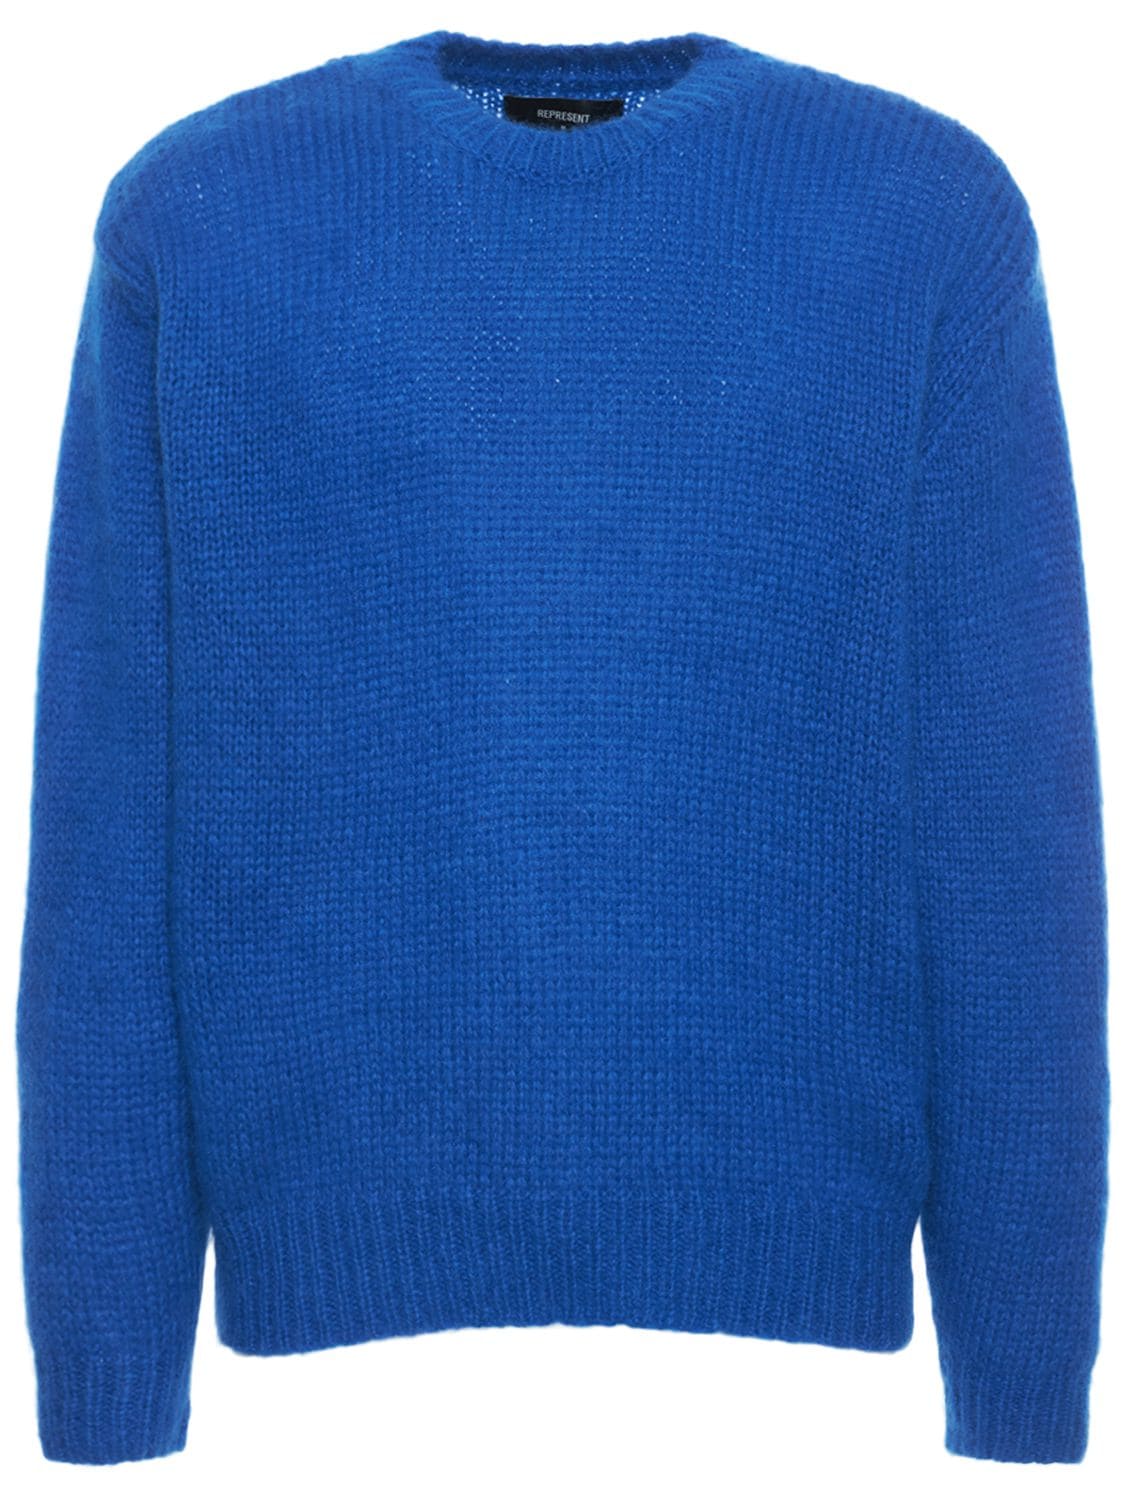 Mohair Blend Knit Sweater